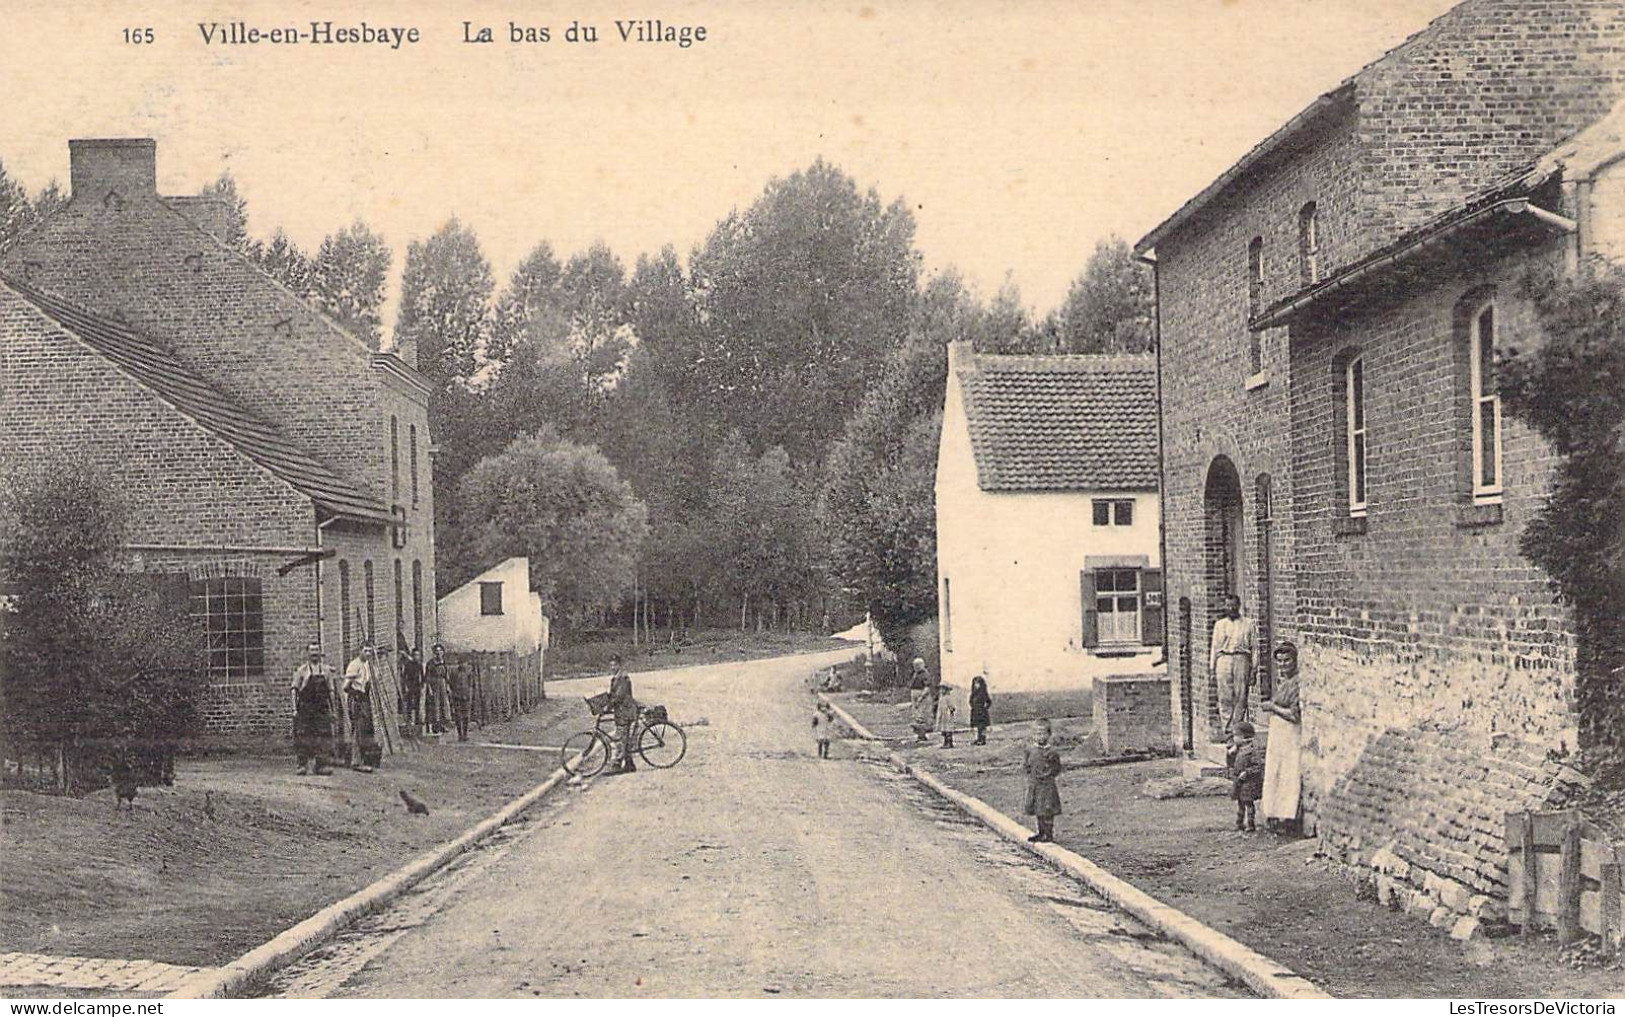 Belgique - Villes En Hesbaye - Le Bas Du Village - Animé - Vélo - Carte Postale Ancienne - Waremme